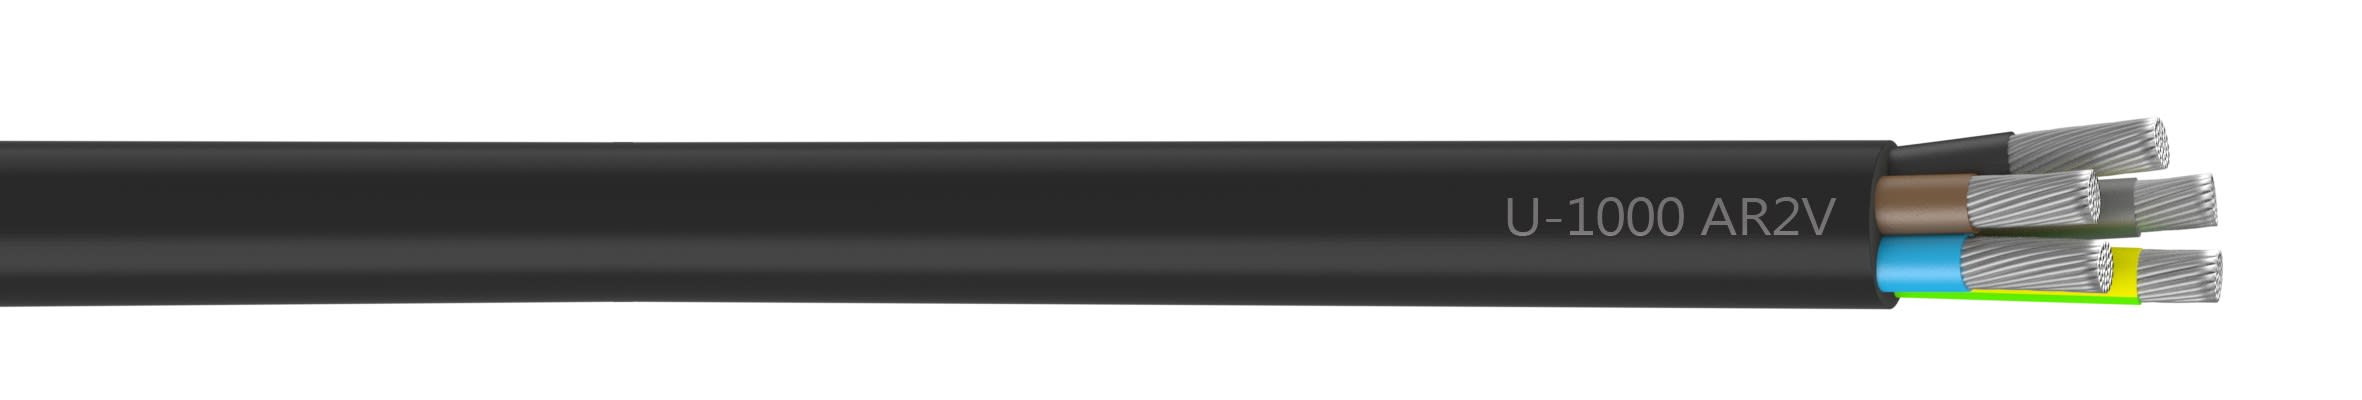 Nexans - Câble rigide U-1000 AR2V aluminium 5G25 longueur à la coupe